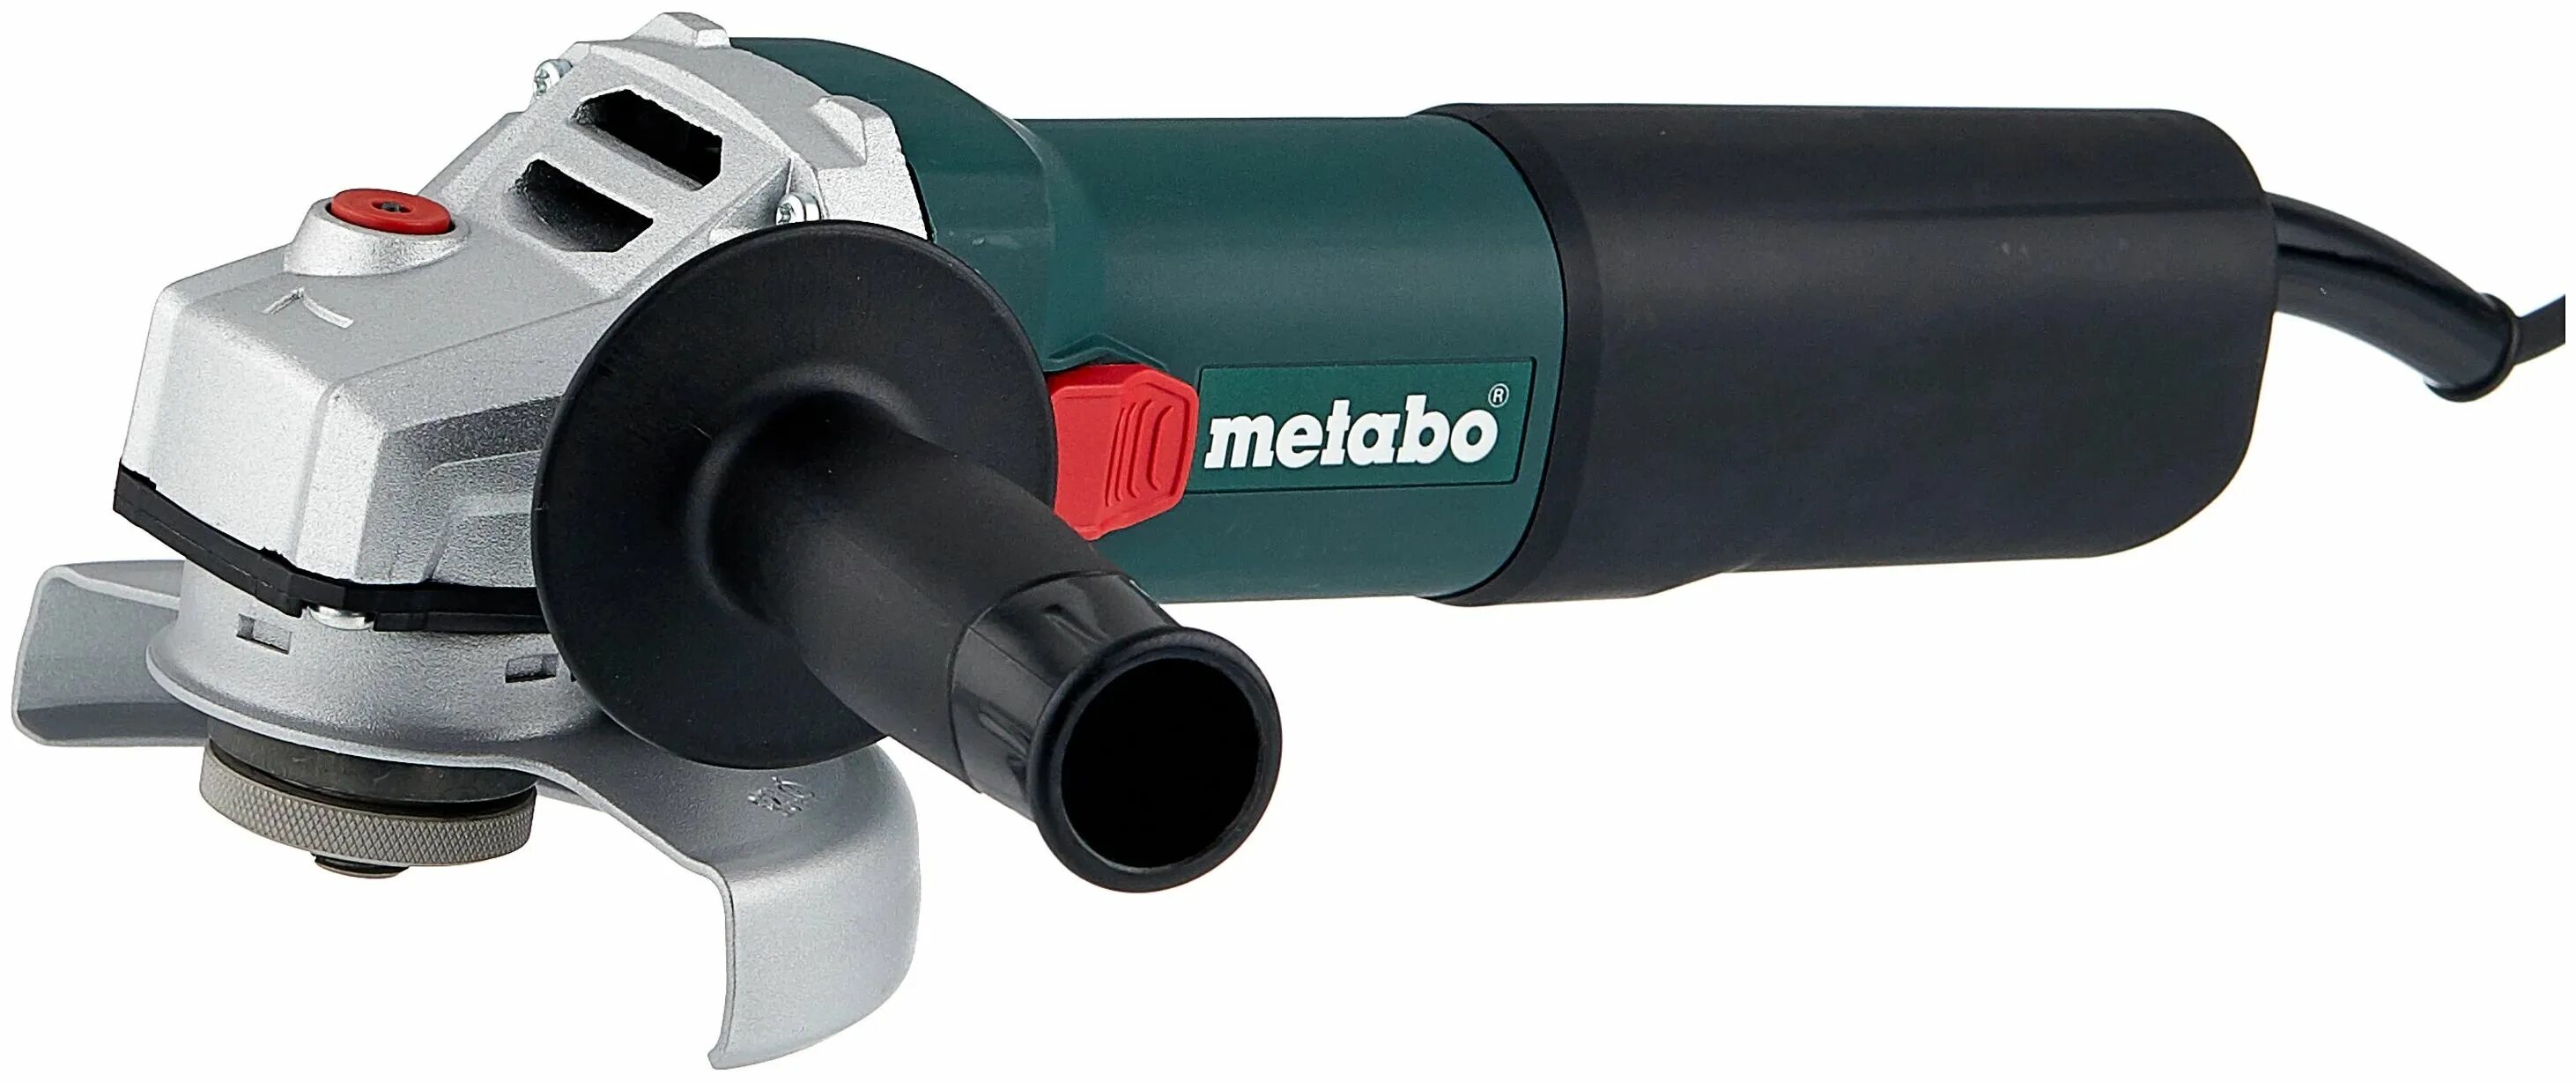 Metabo weq 1400-125 600347000. УШМ Metabo WQ 1100-125. Болгарка Metabo weq 1400-125. УШМ Metabo WQ 1400, 1400 Вт, 125 мм.